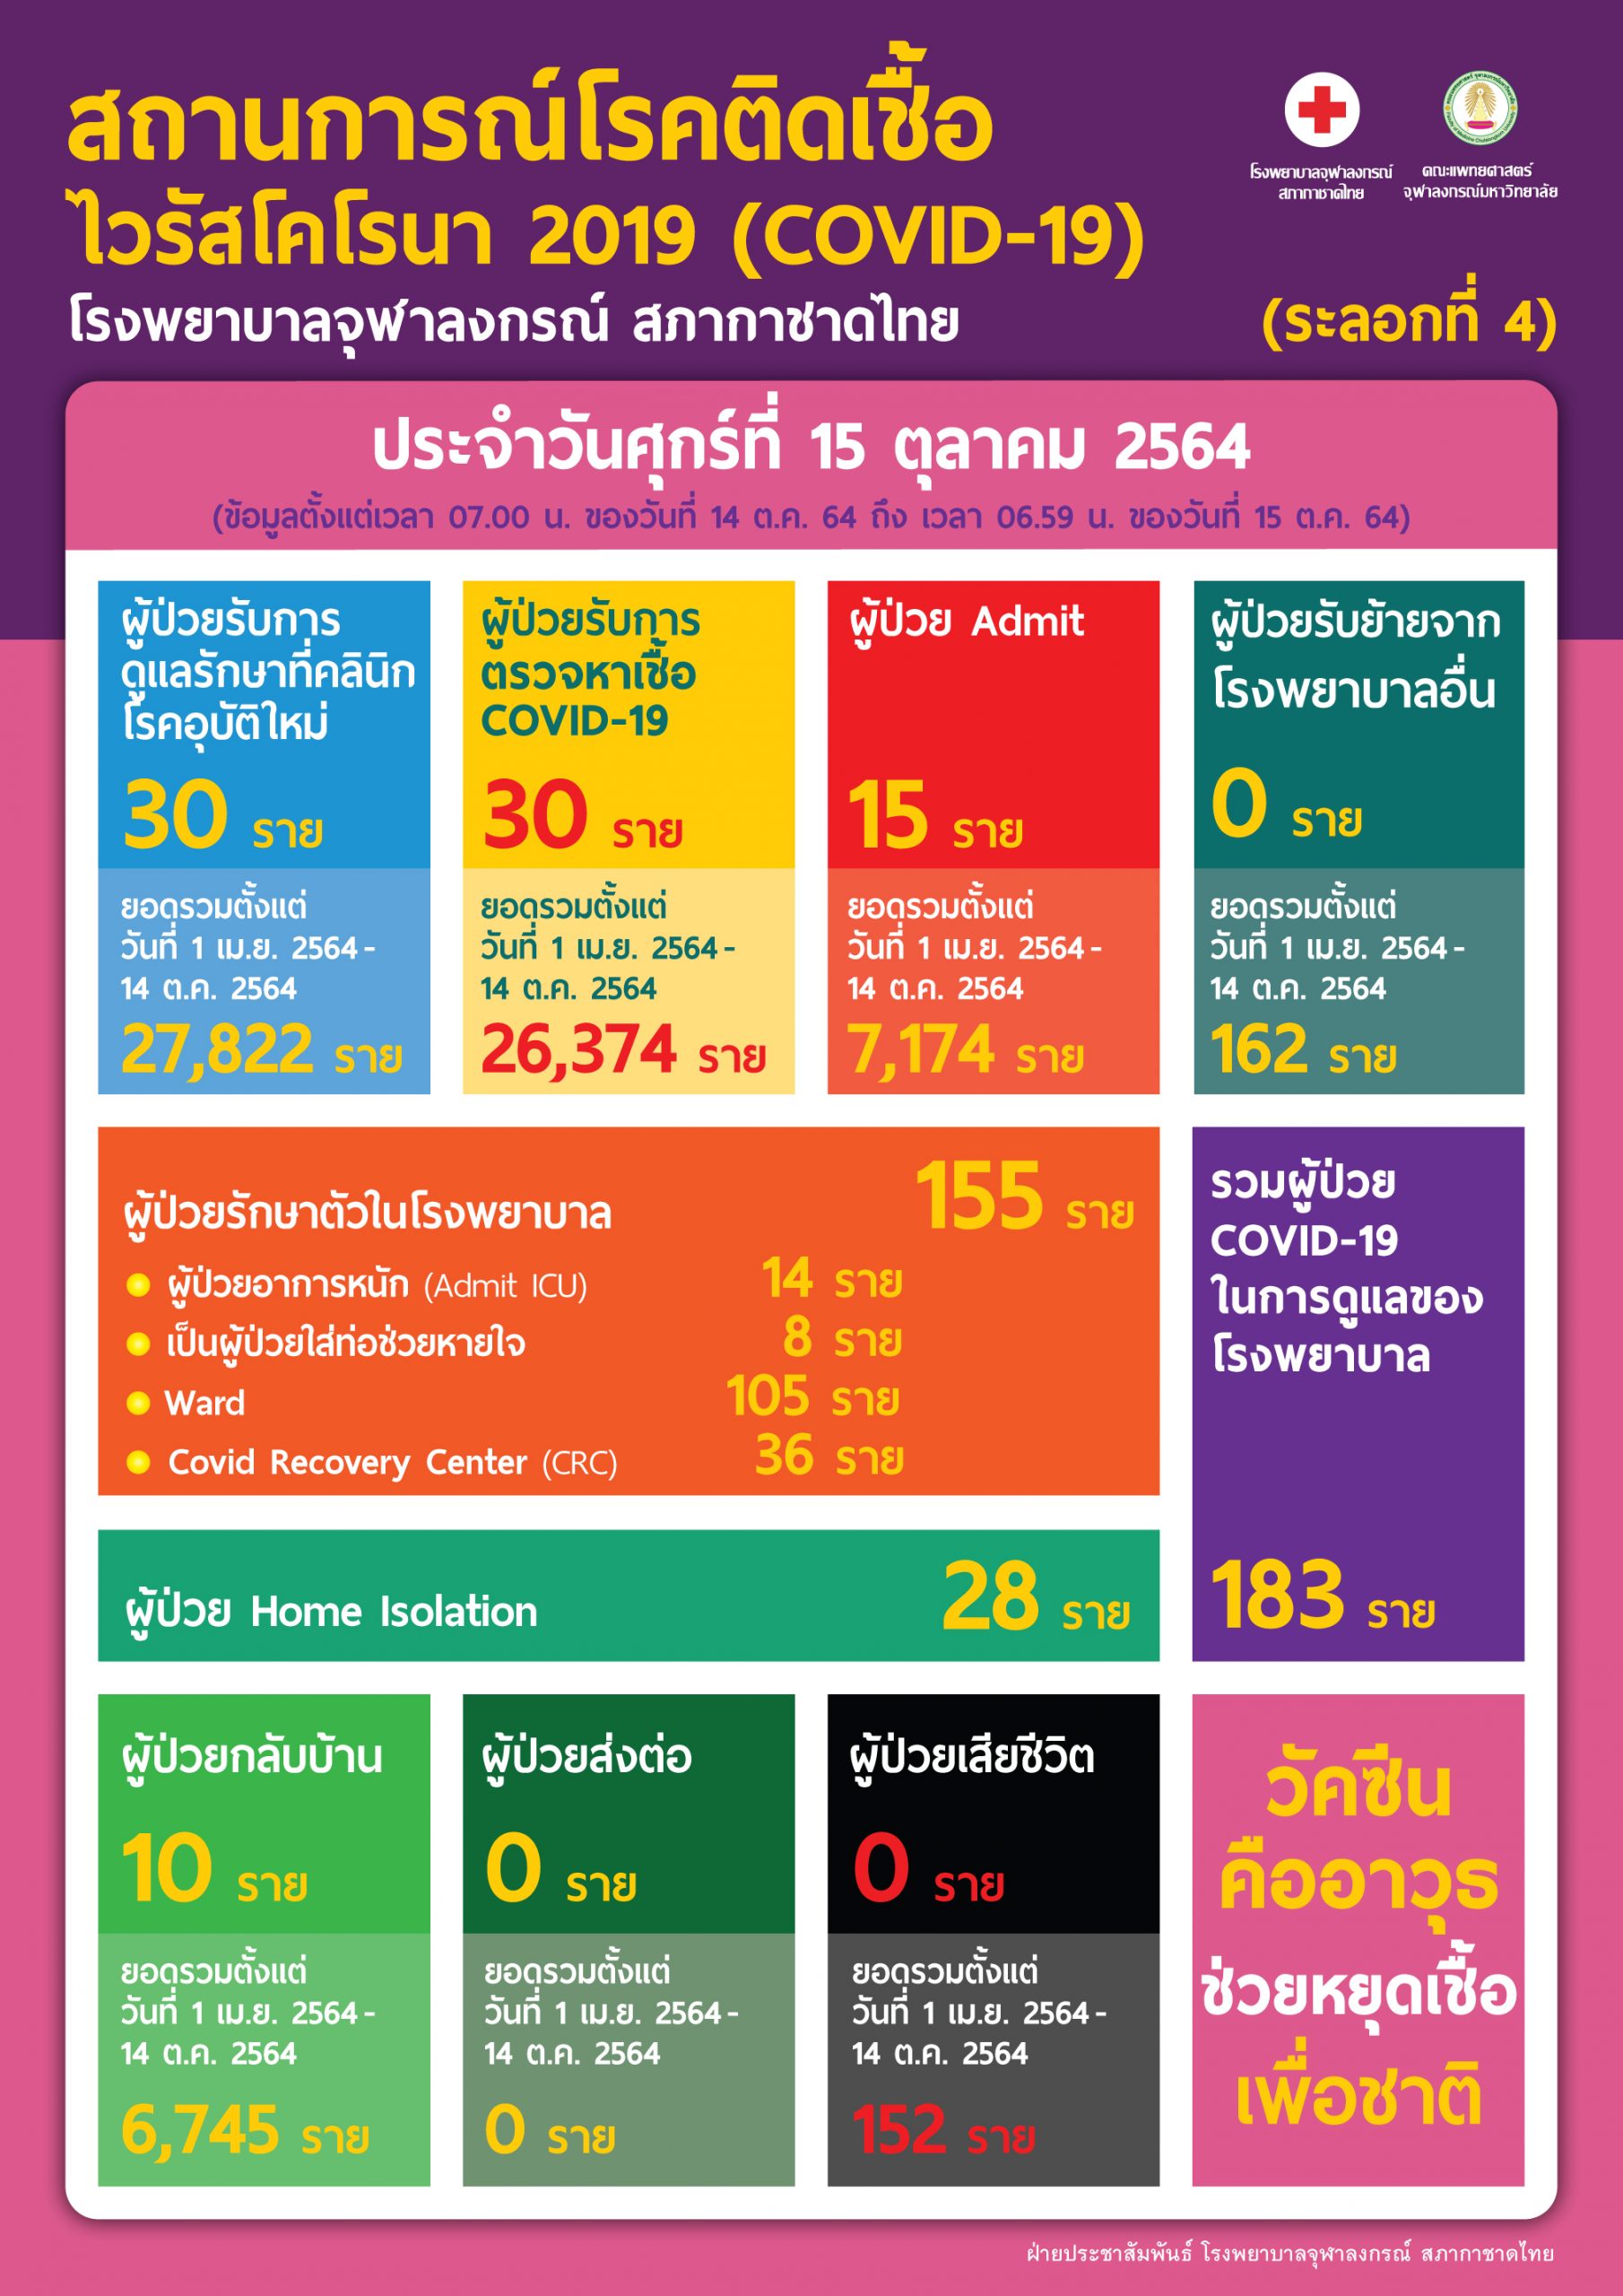 สถานการณ์โรคติดเชื้อไวรัสโคโรนา 2019 (COVID-19) (ระลอกที่ 4) โรงพยาบาลจุฬาลงกรณ์ สภากาชาดไทย ประจำวันศุกร์ที่ 15 ตุลาคม 2564